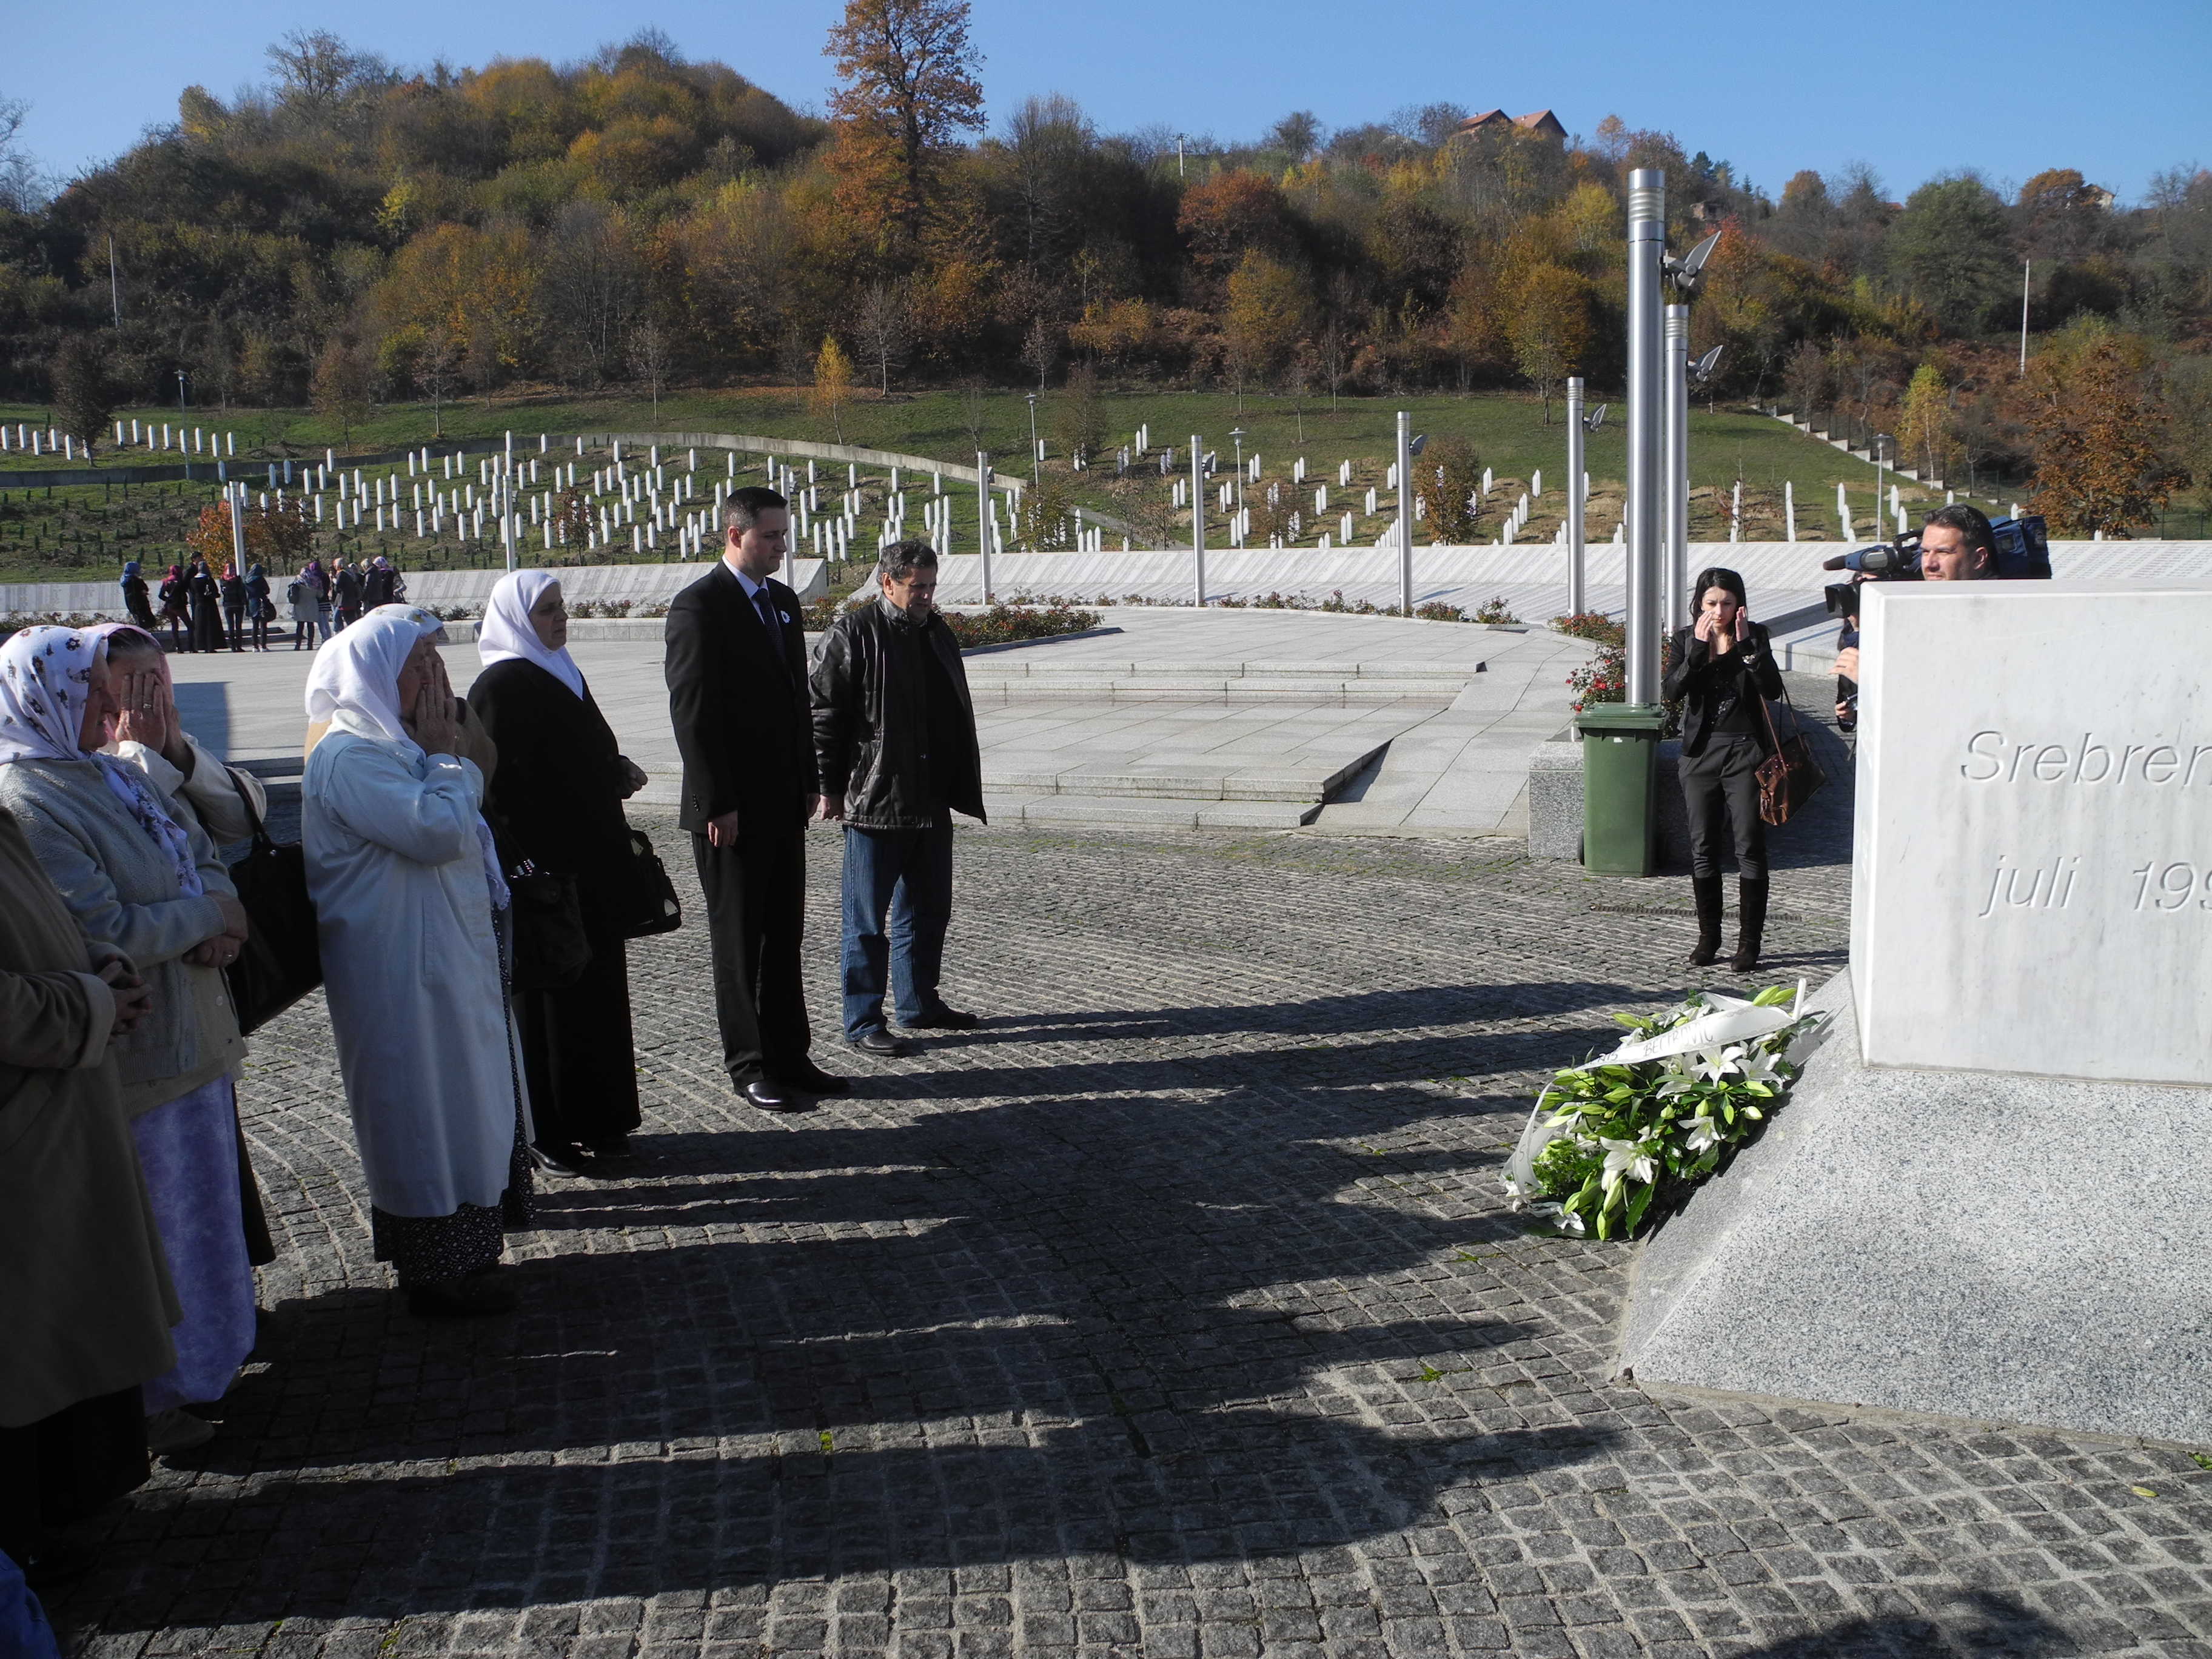 Predsjedatelj Zastupničkog doma dr. Denis Bećirović posjetio Memorijalni centar Srebrenica - Potočari

